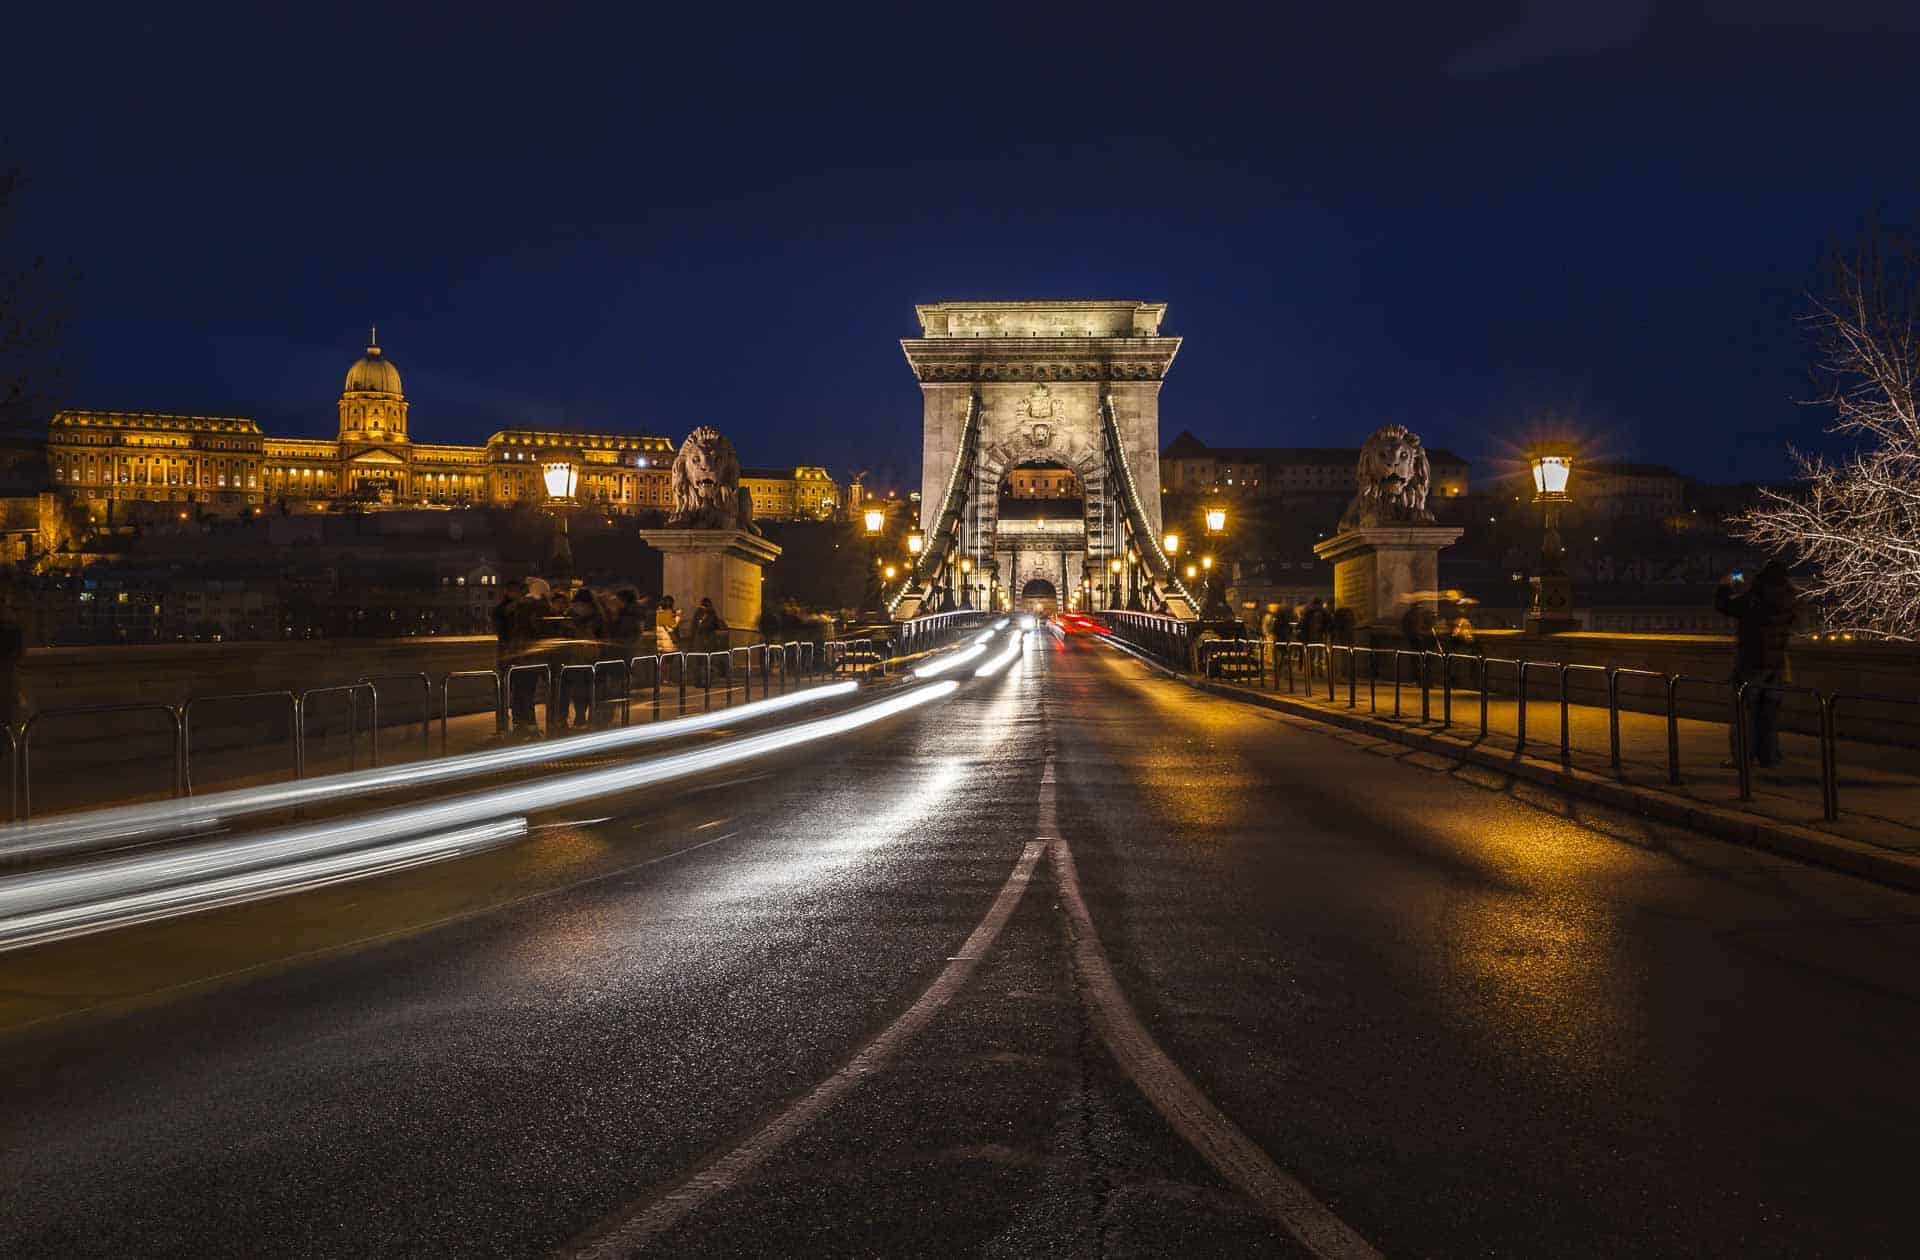 The Chain Bridge in Budapest, Hungary